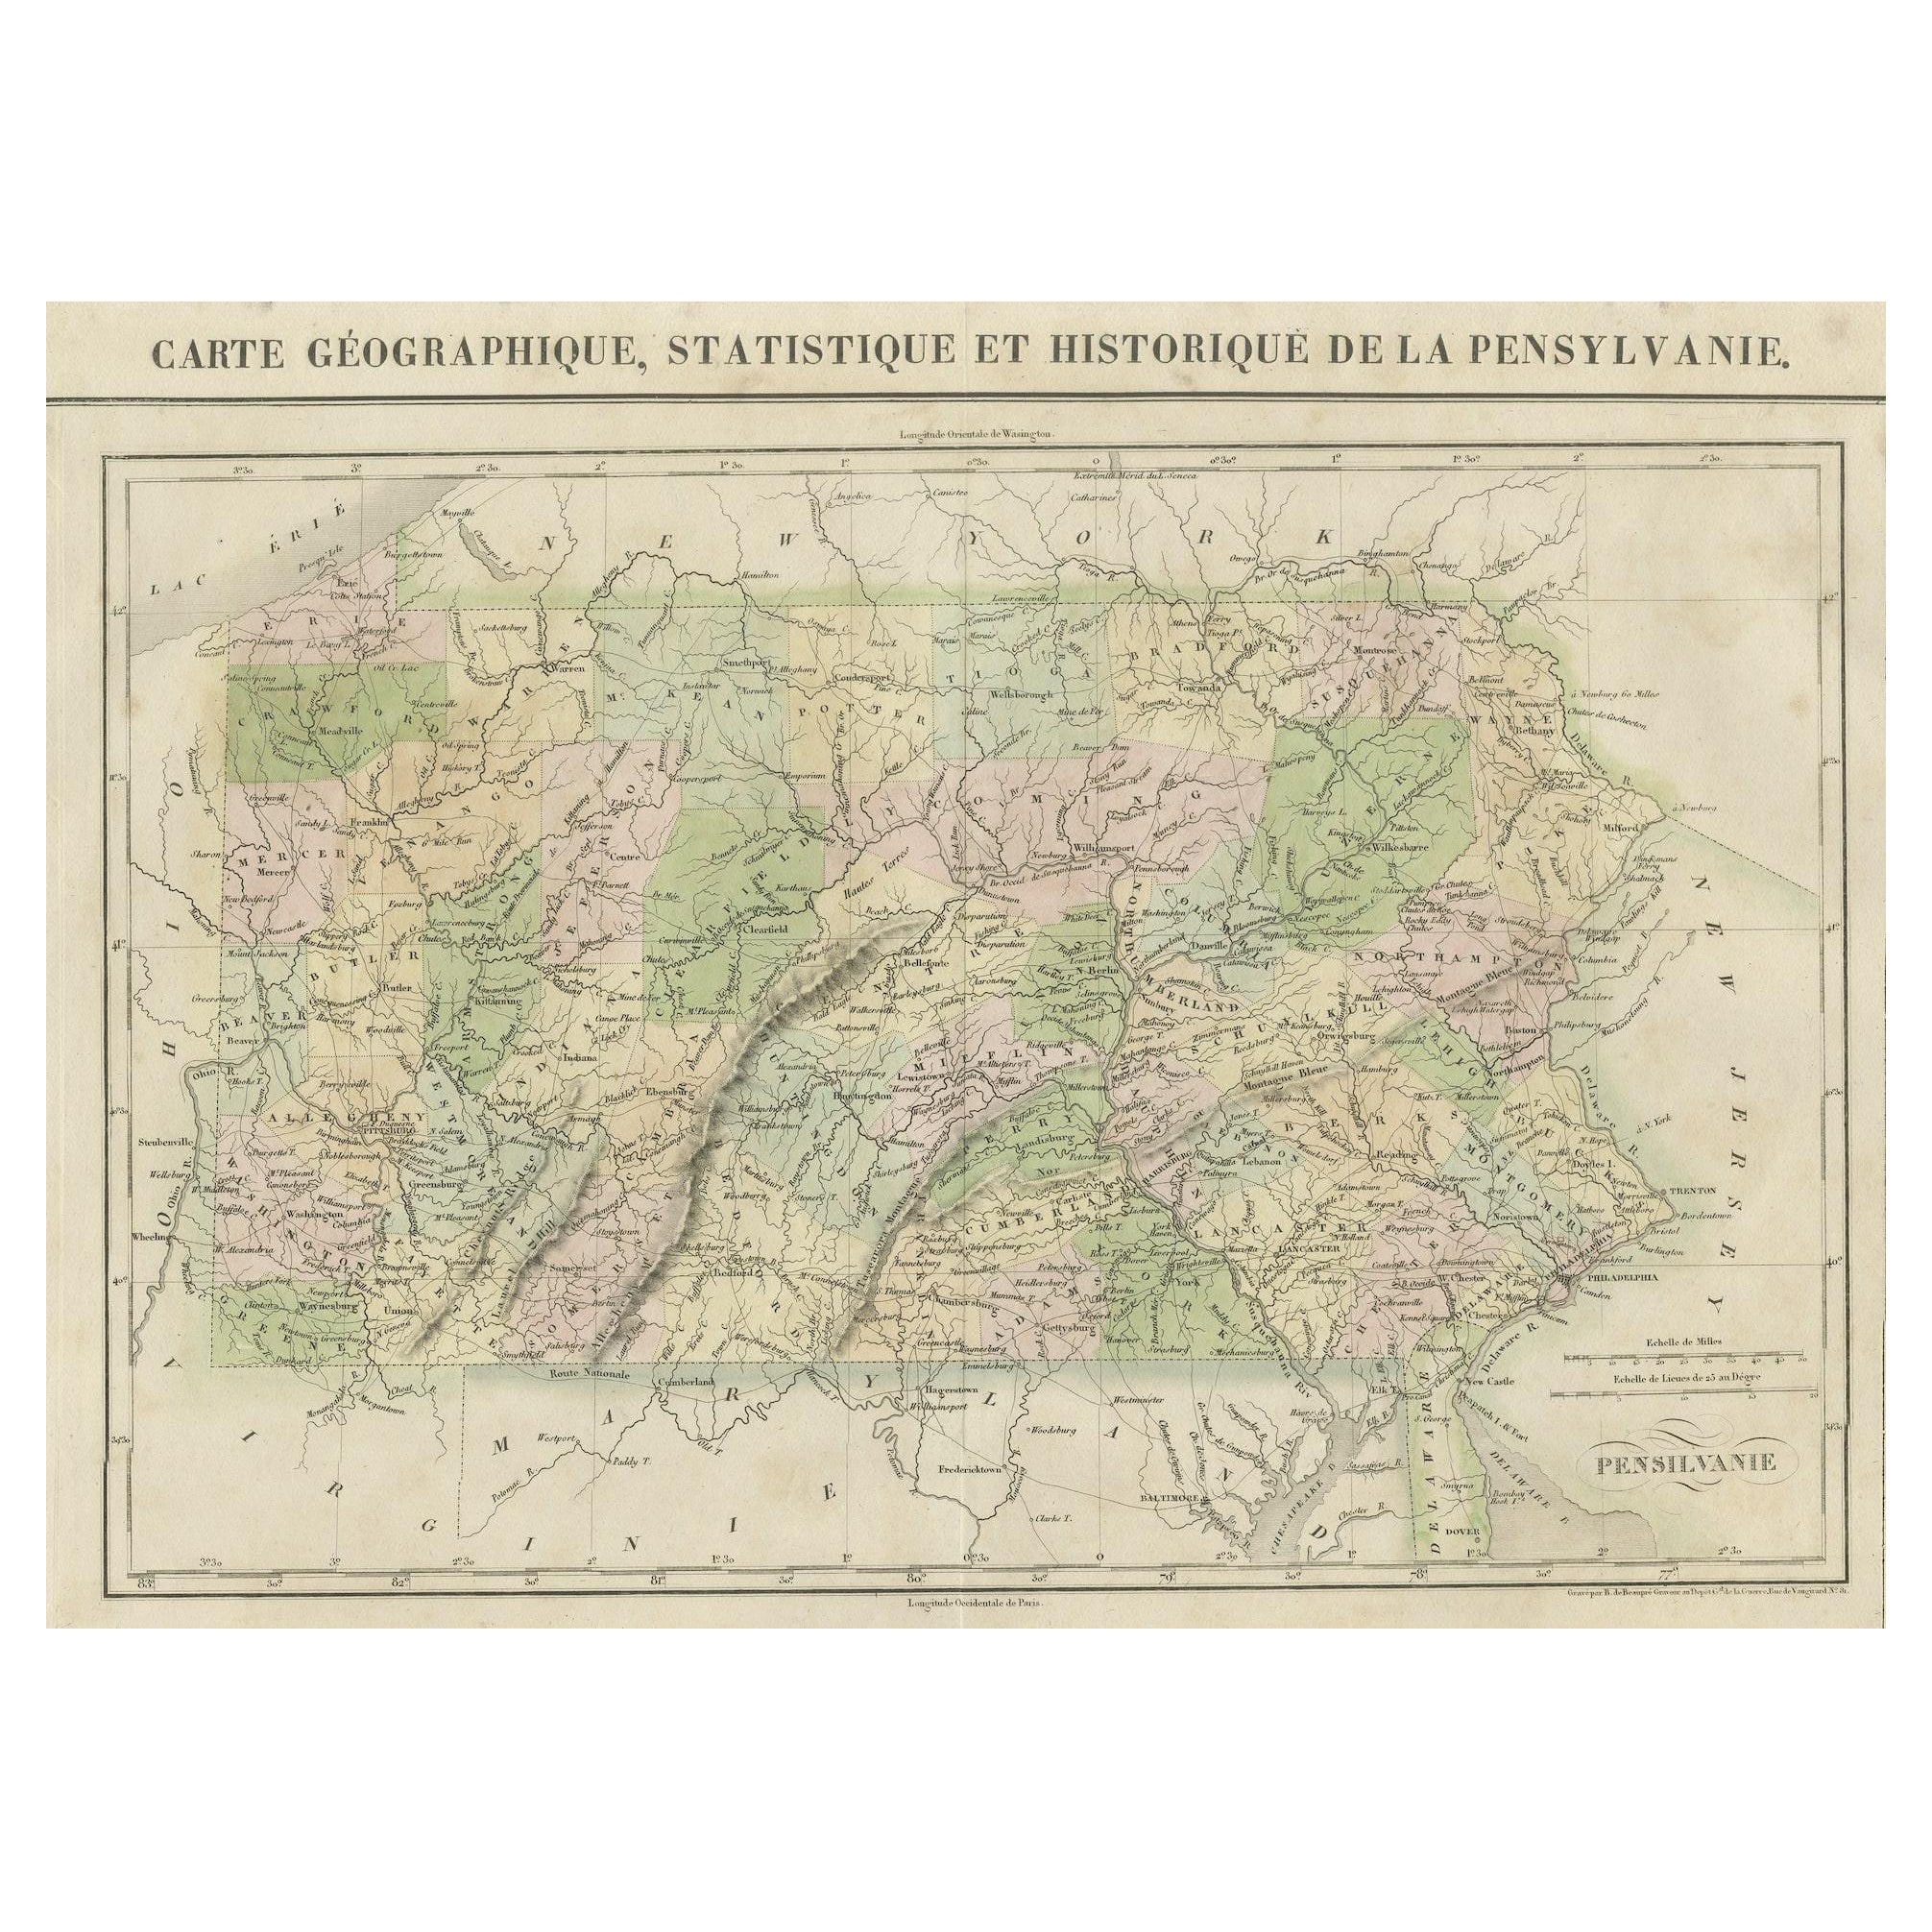 Carte géographique, Statistique et historique de la Pennsylvanie, 1825